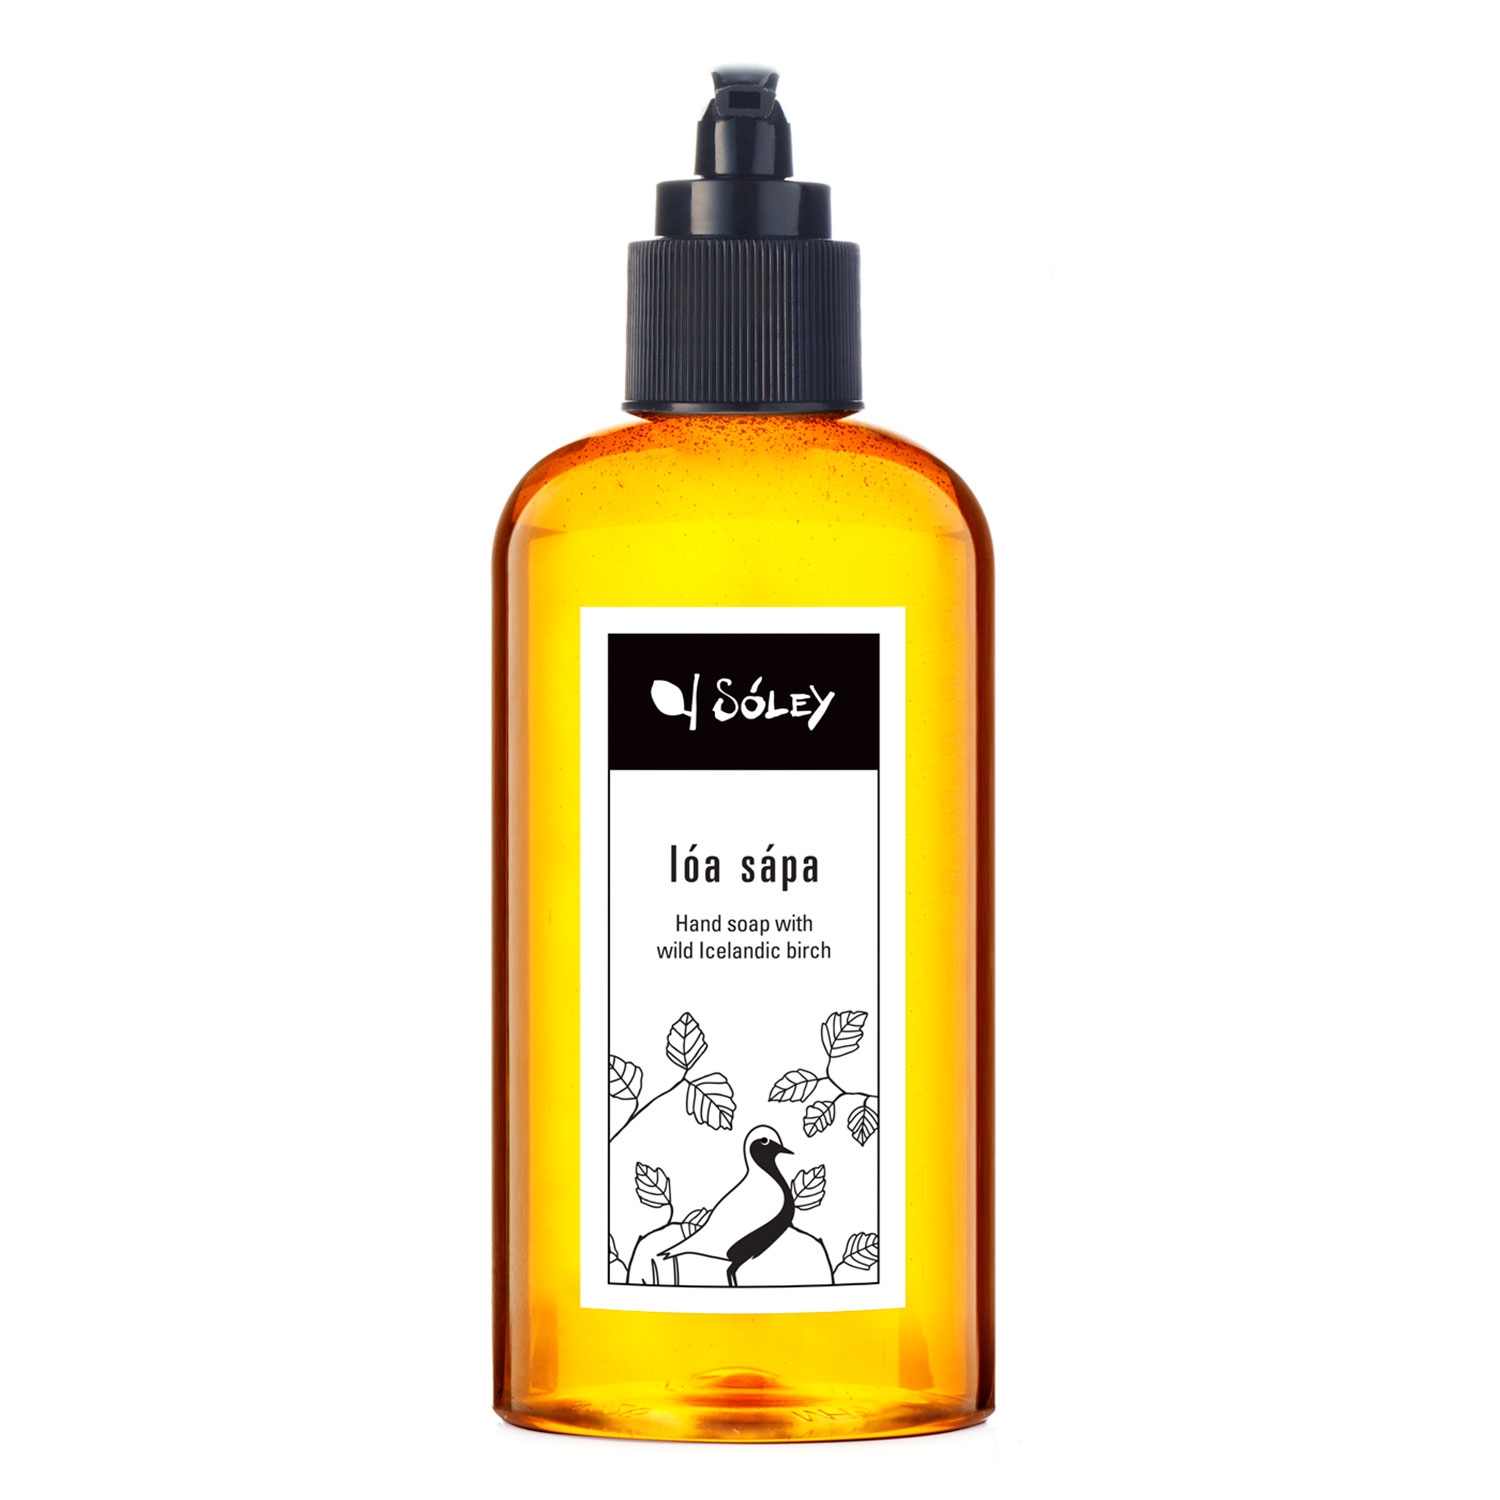 Produktbild von Sóley Body - Lóa Hand soap